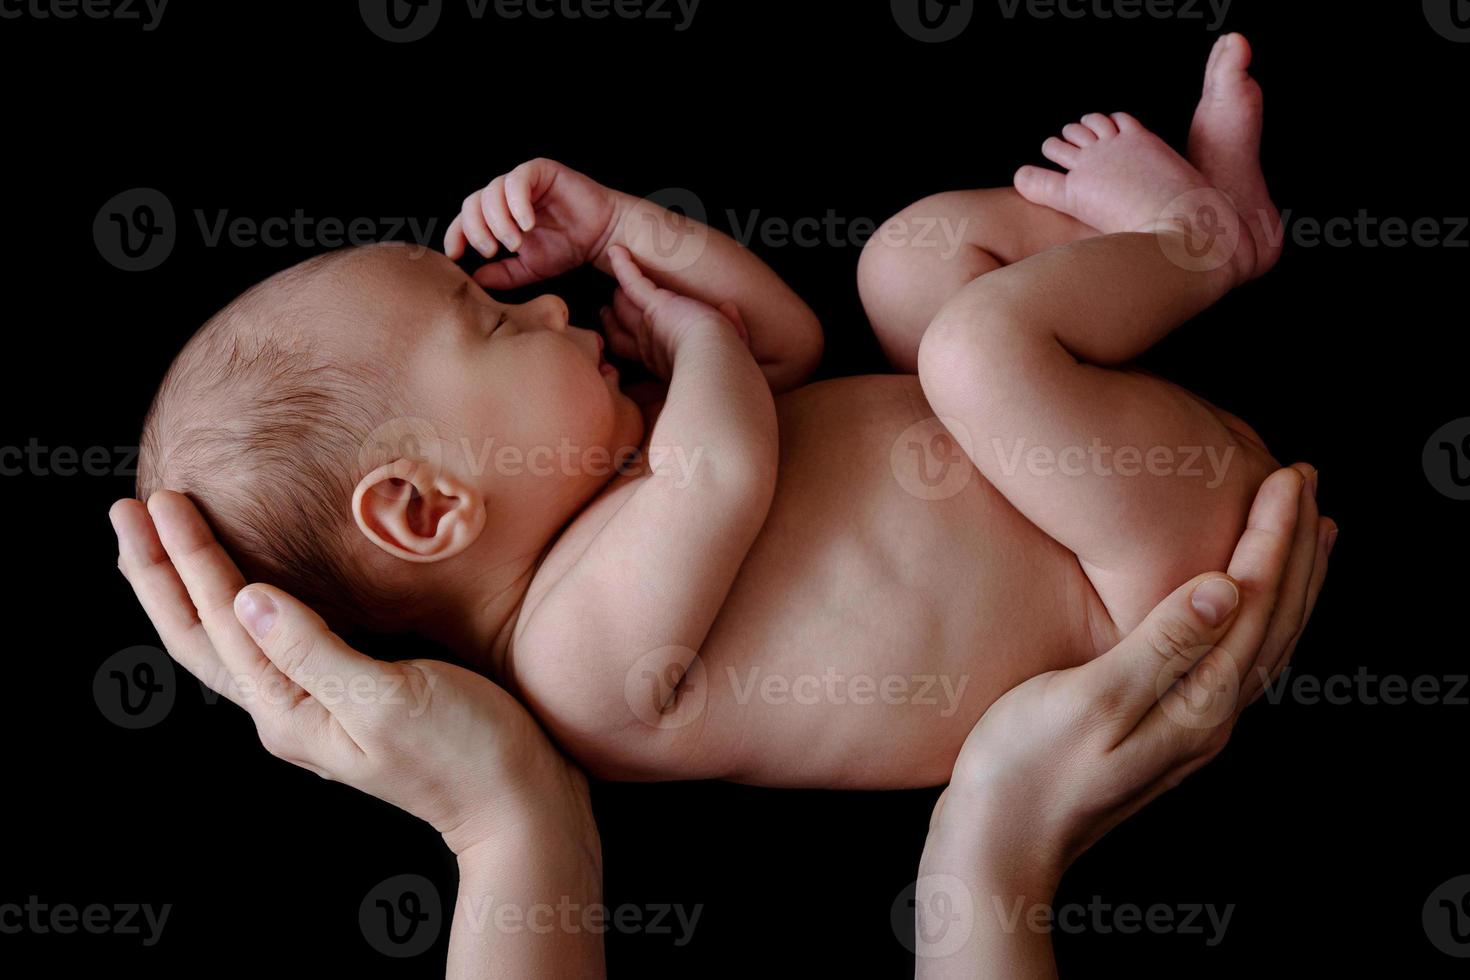 carino neonato bambino dire bugie nel il La madre di mani foto